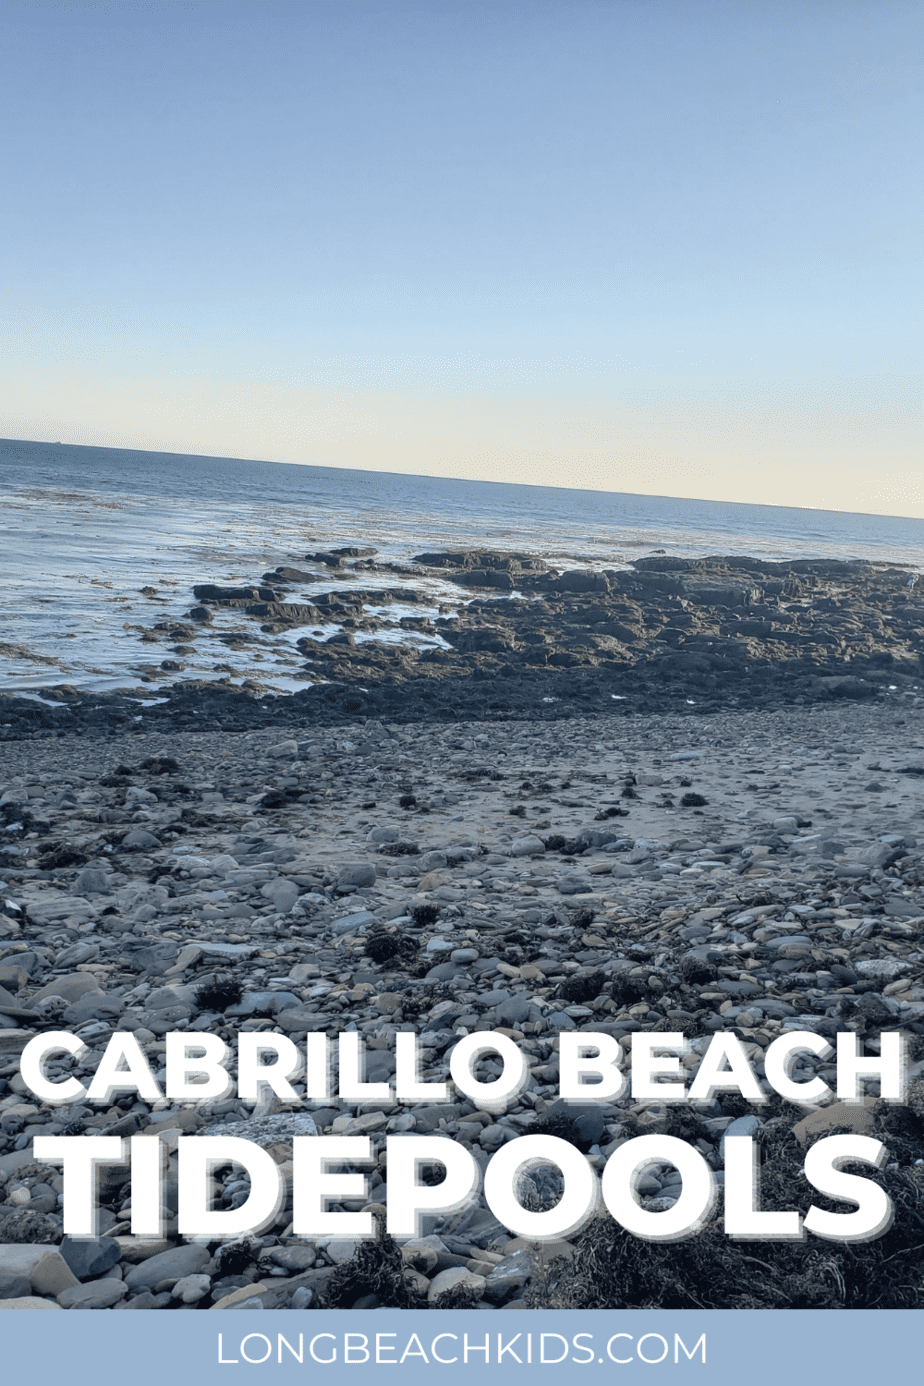 the tidepools at cabrillo; text: cabrillo beach tidepools